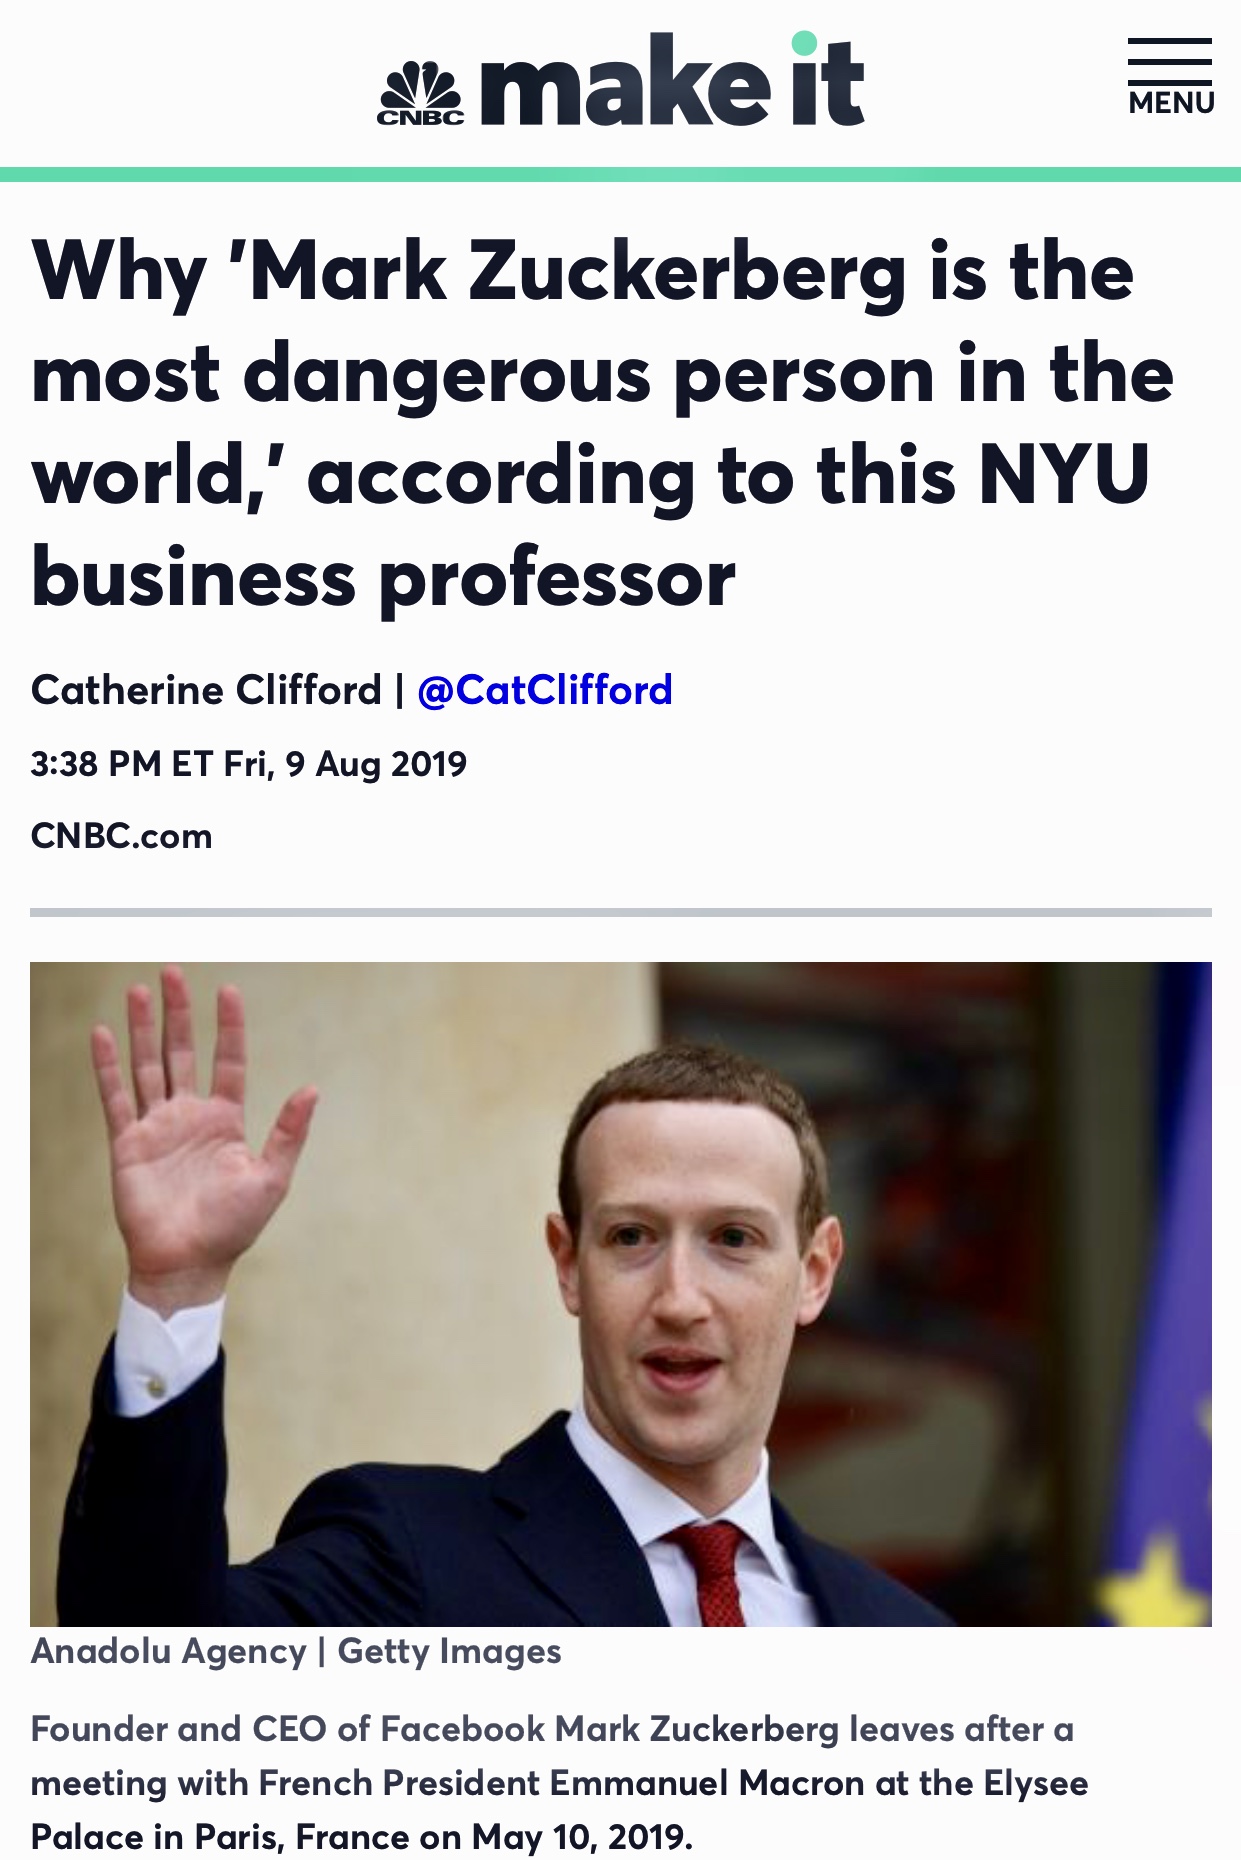 Scott Galloway: Why Mark Zuckerberg is ‘dangerous’